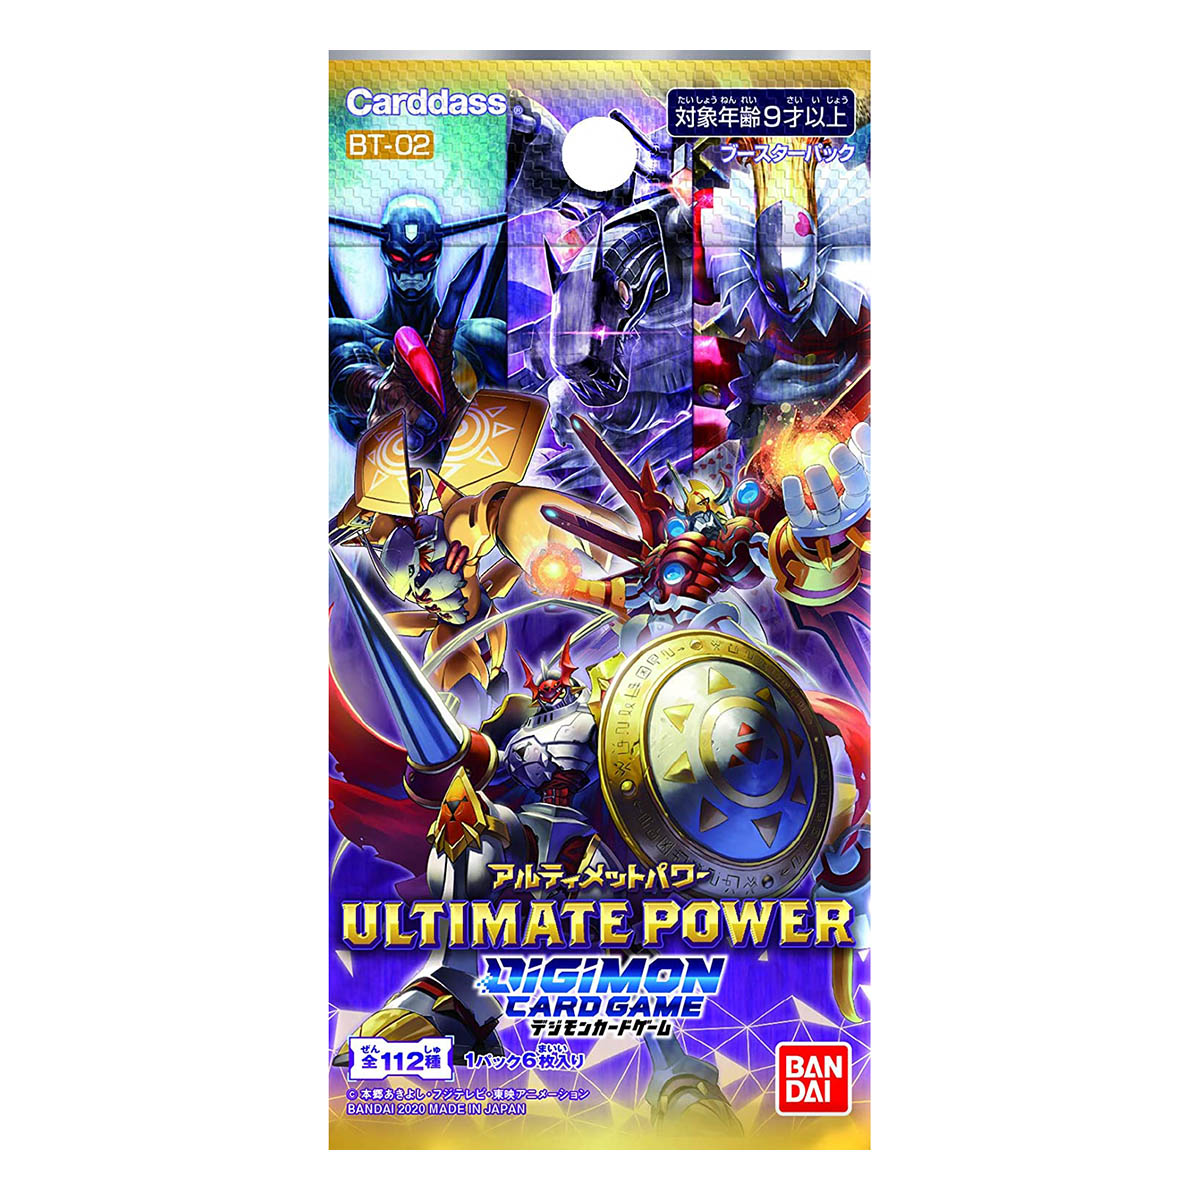 デジモンカードゲーム『ブースター ULTIMATE POWER』24パック入りBOX-002